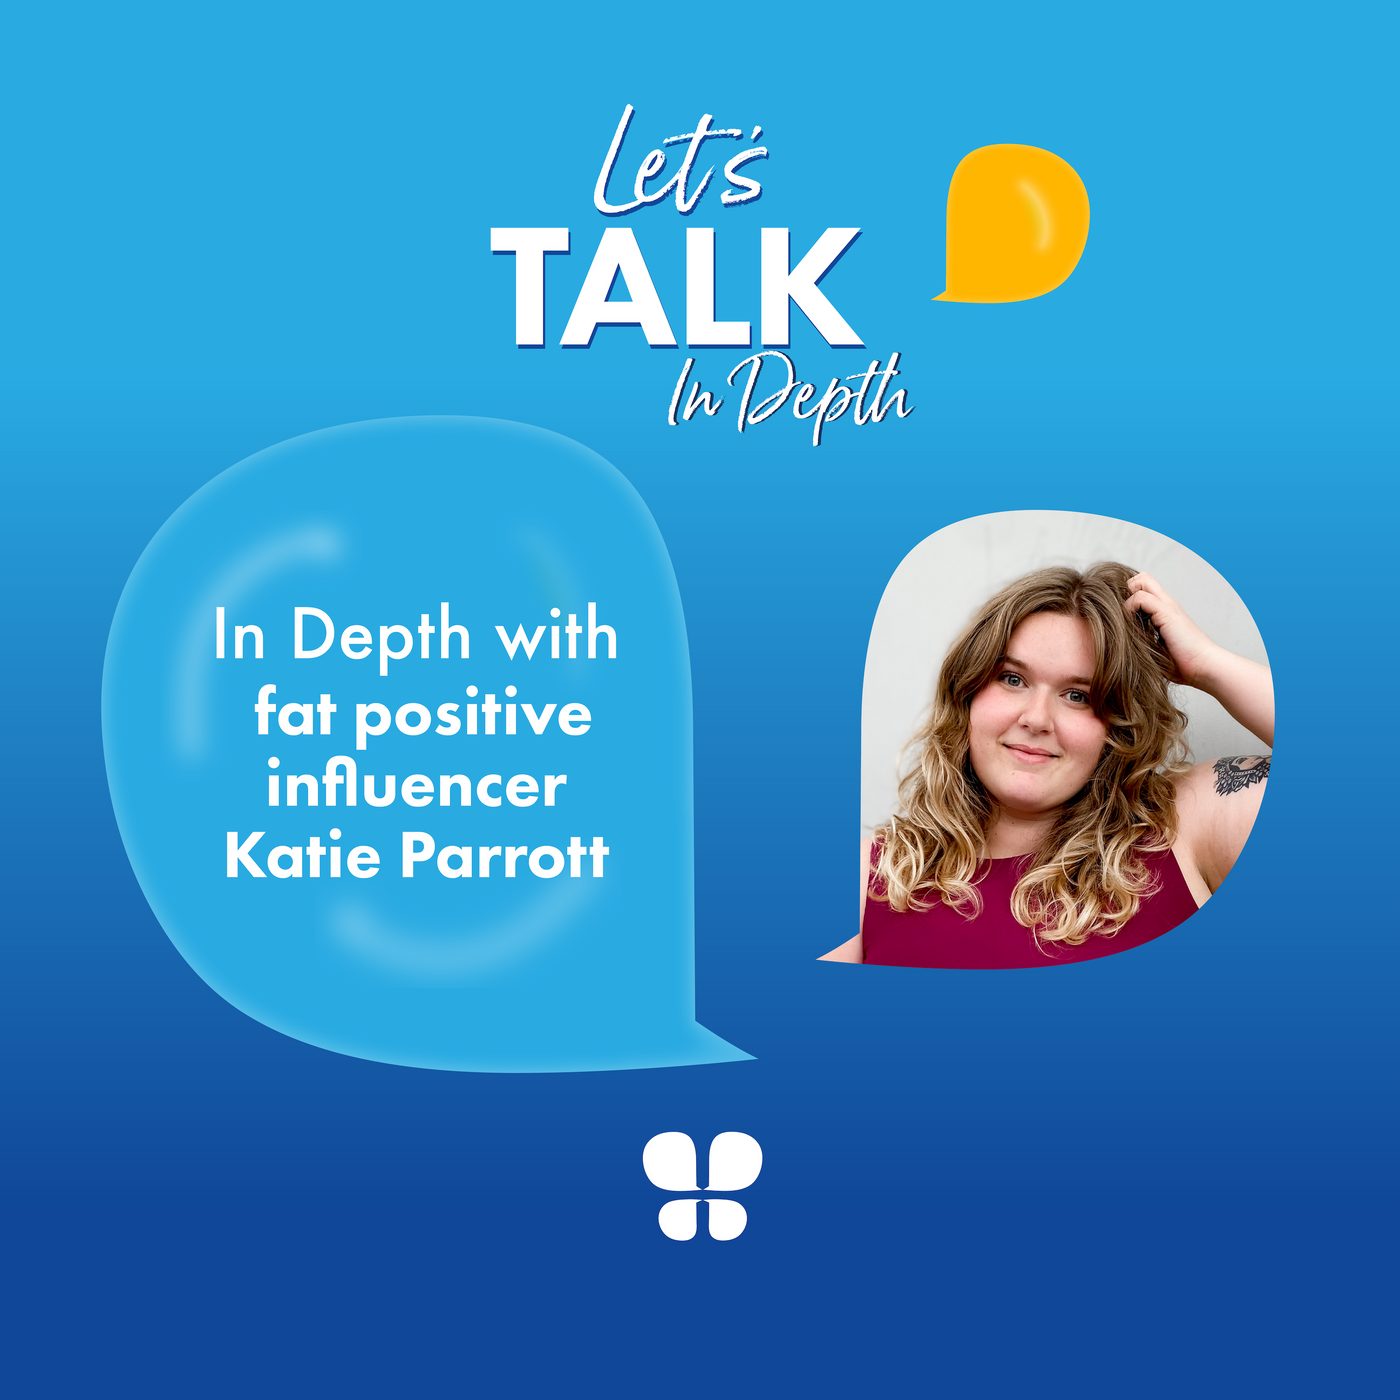 In Depth with fat positive influencer Katie Parrott